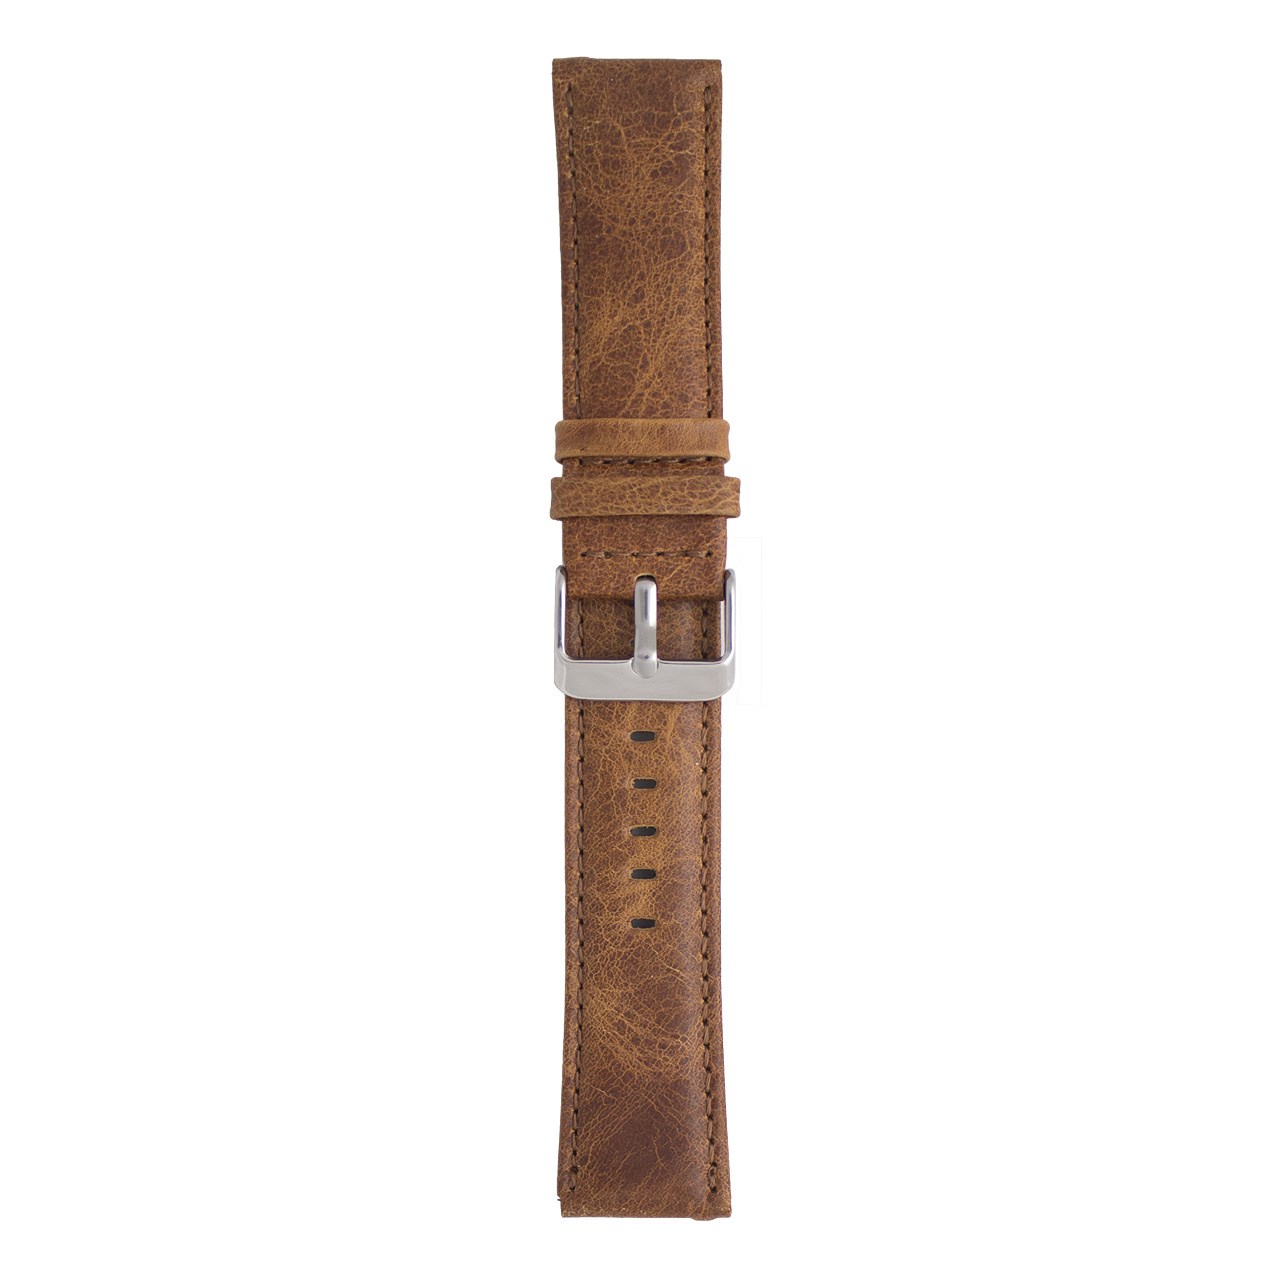 بند چرمی ساعت هوشمند مدل Leather Band مناسب برای Gear S3